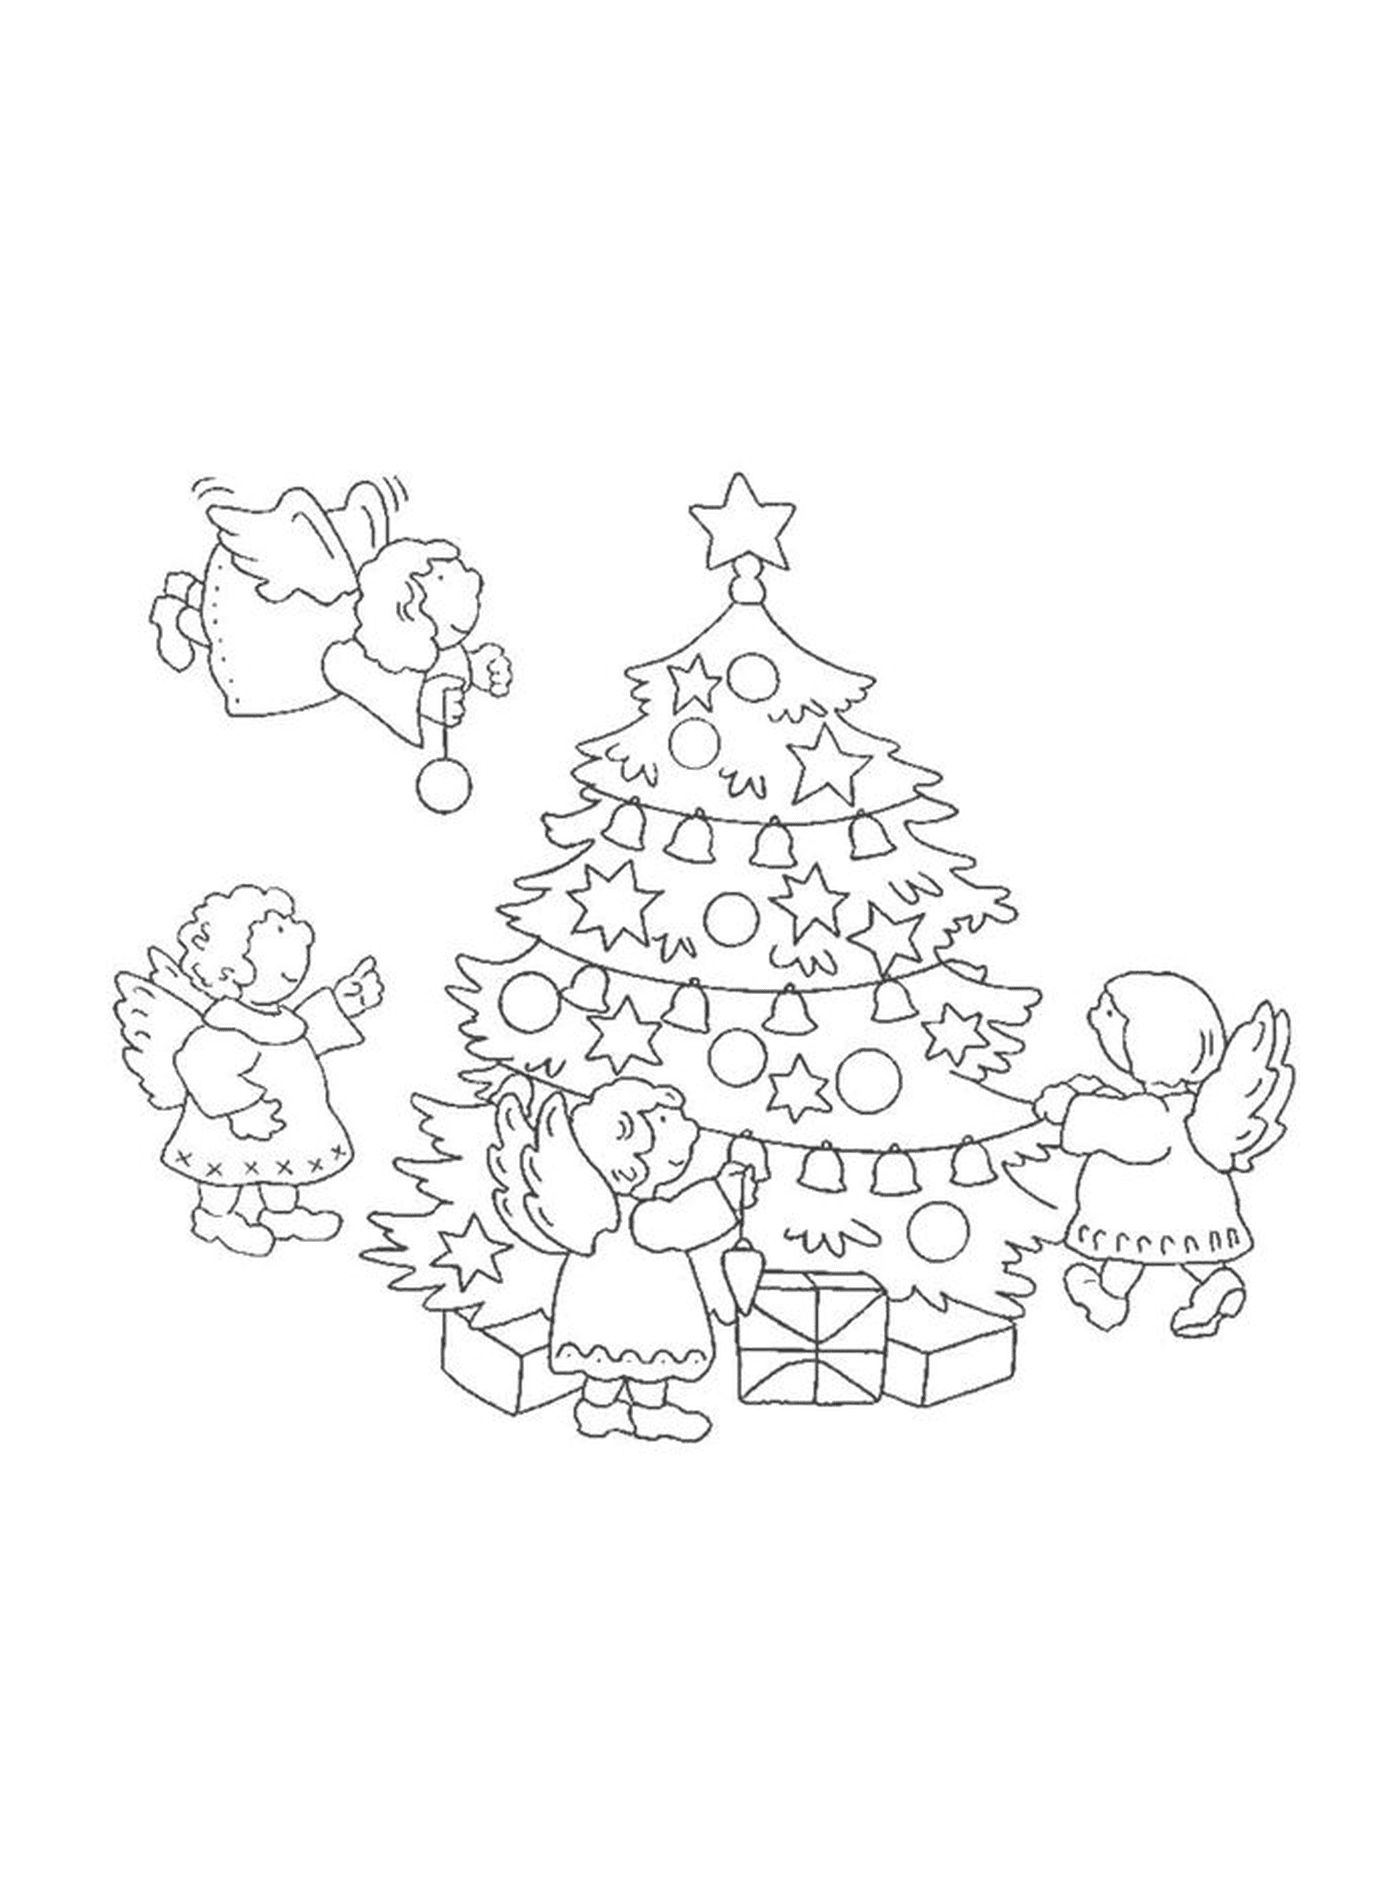  स्वर्गदूतों के साथ क्रिसमस का पेड़ 